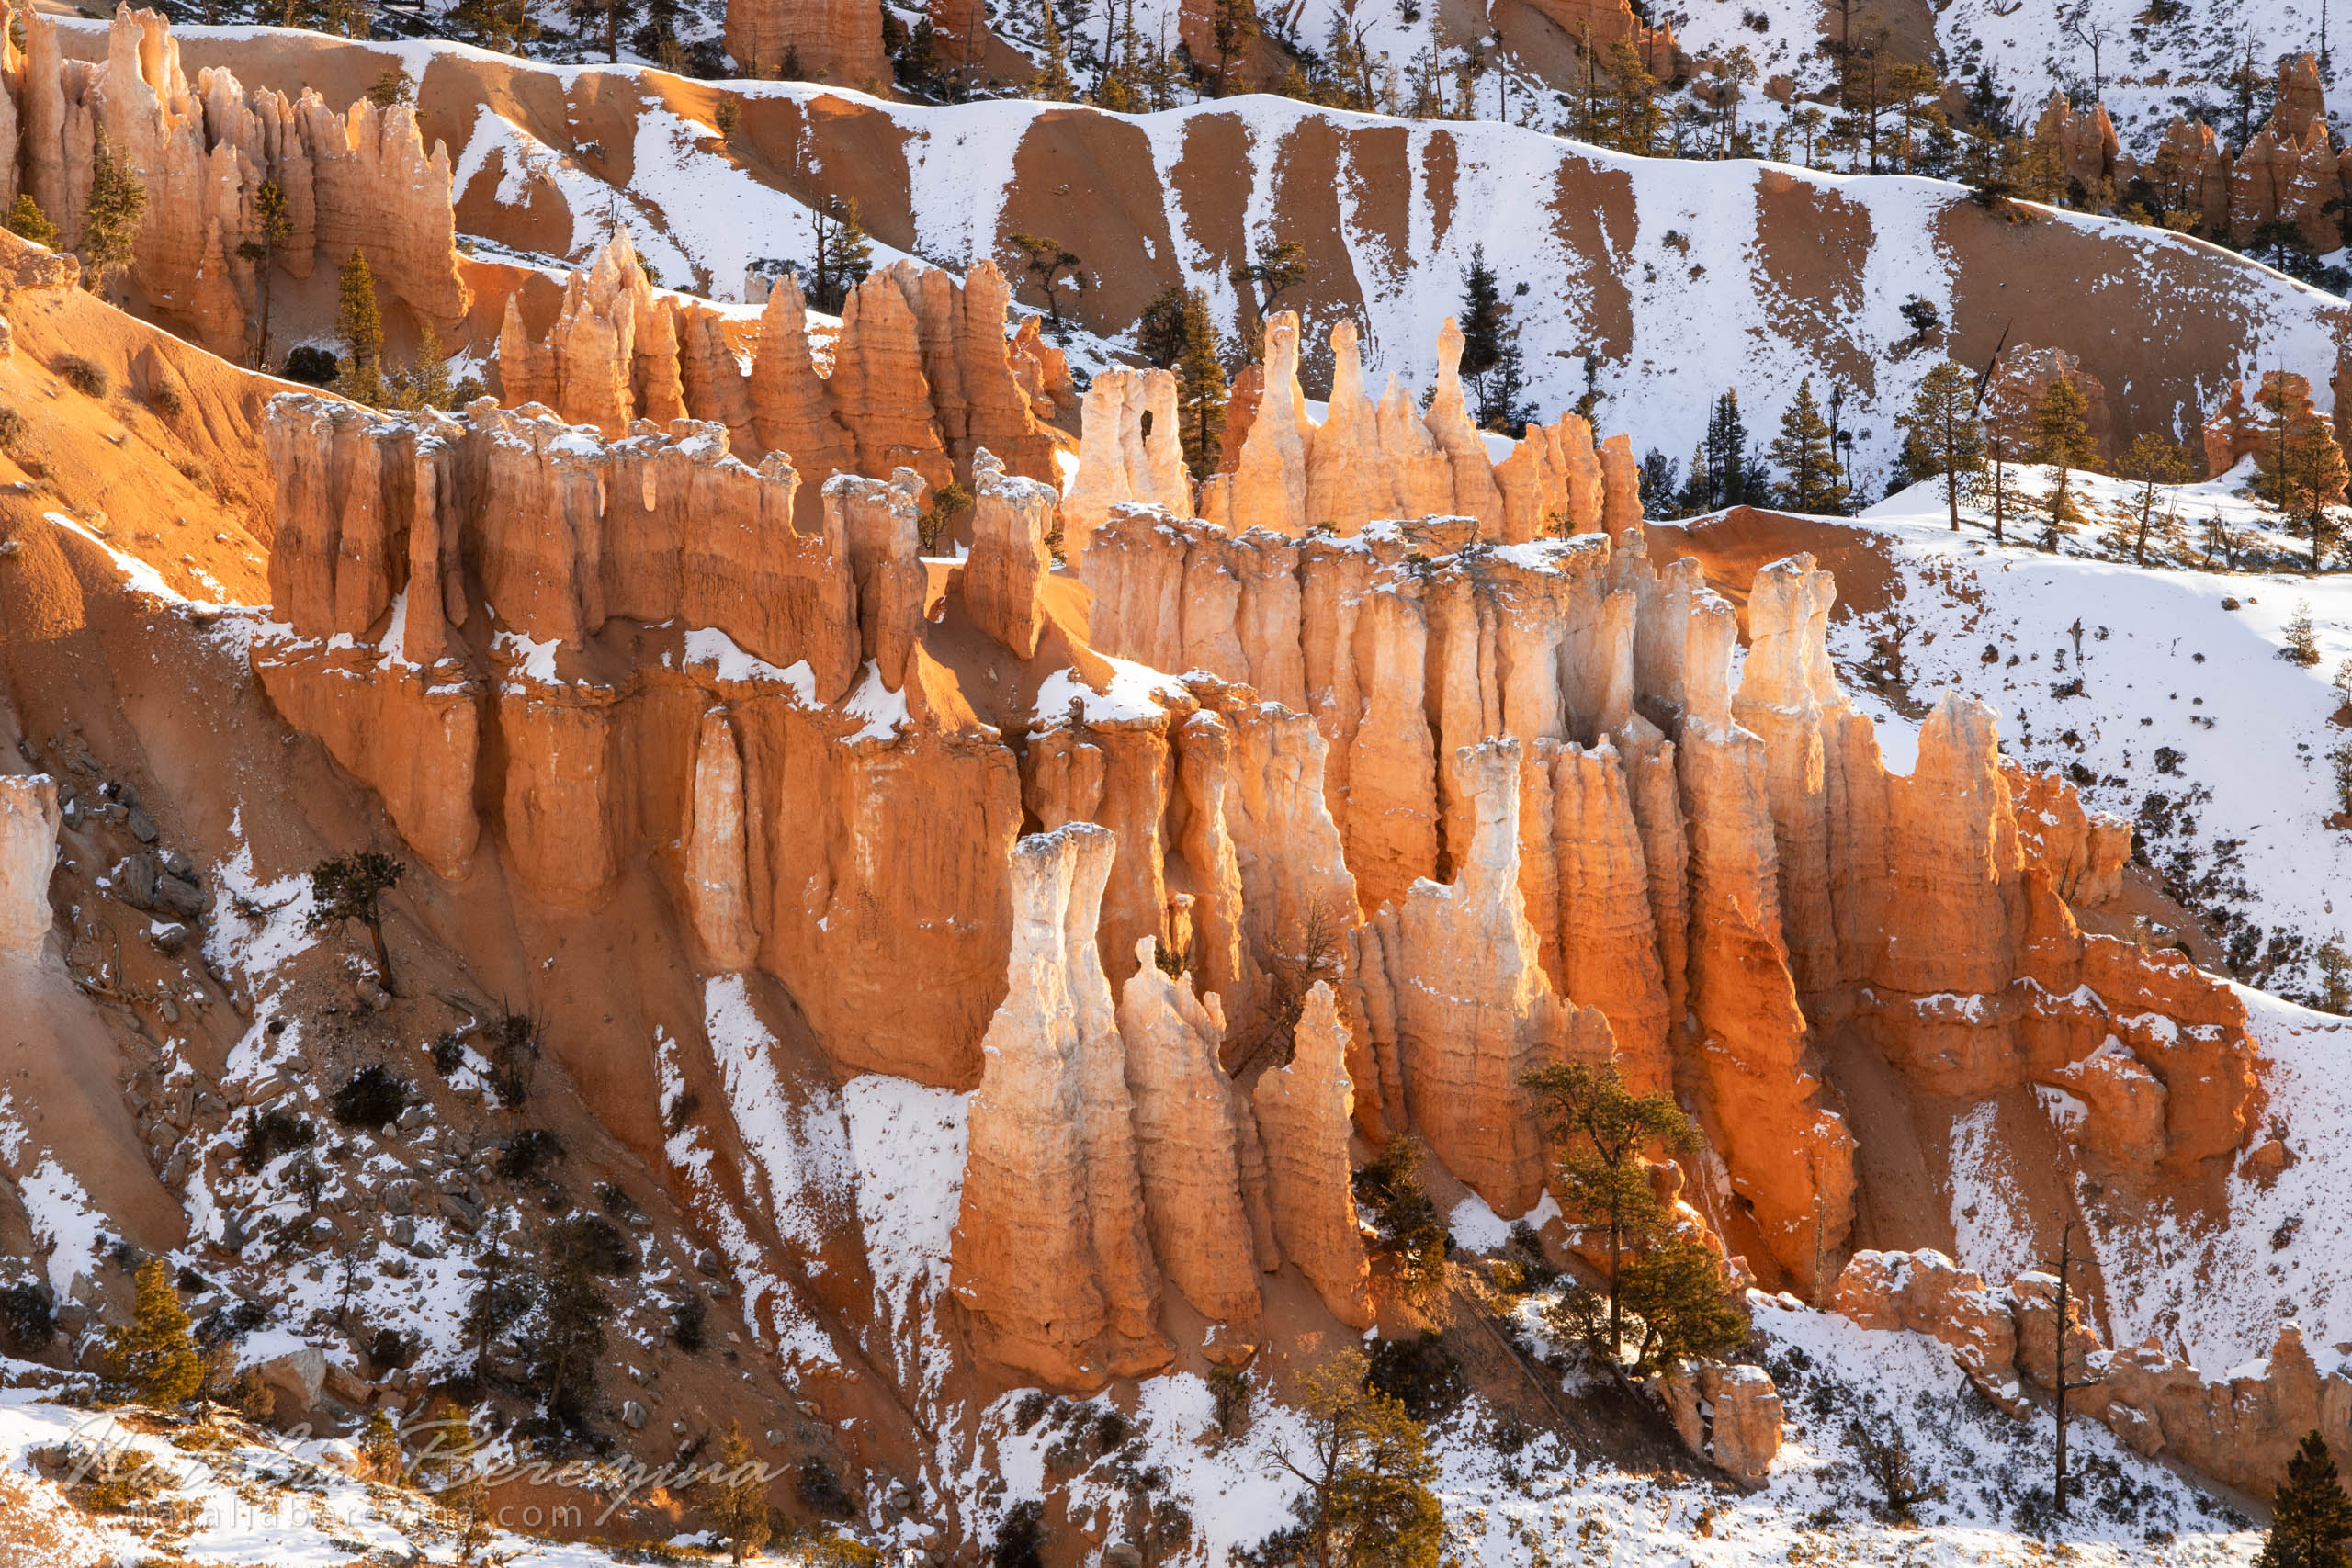  BC2-NB7B6A4702 - Bryce Canyon National Park, Utah, USA - Natalia Berezina Photography